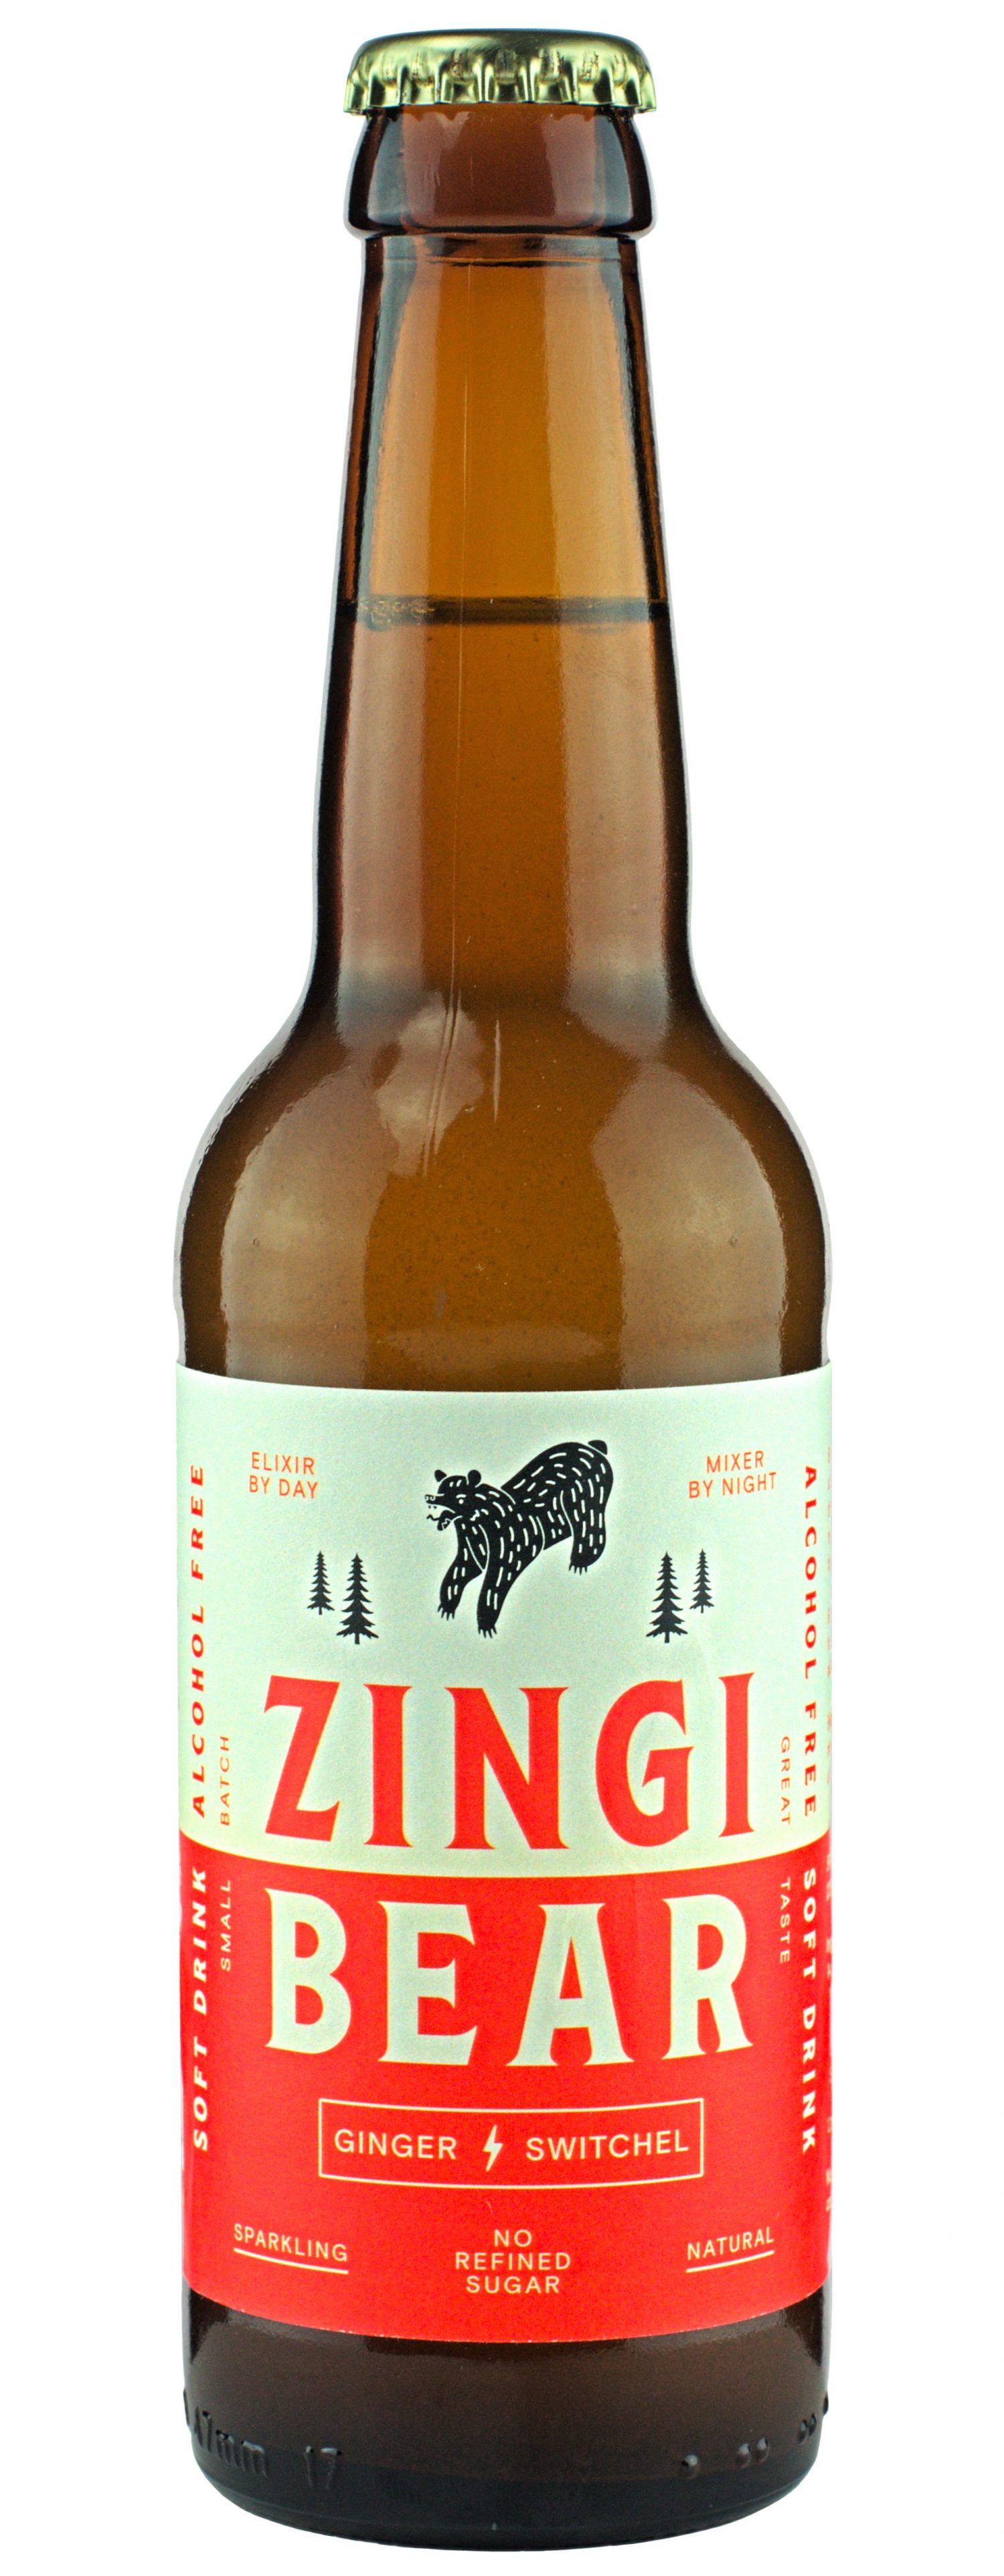 Zingi Bear Organic Ginger Switchel